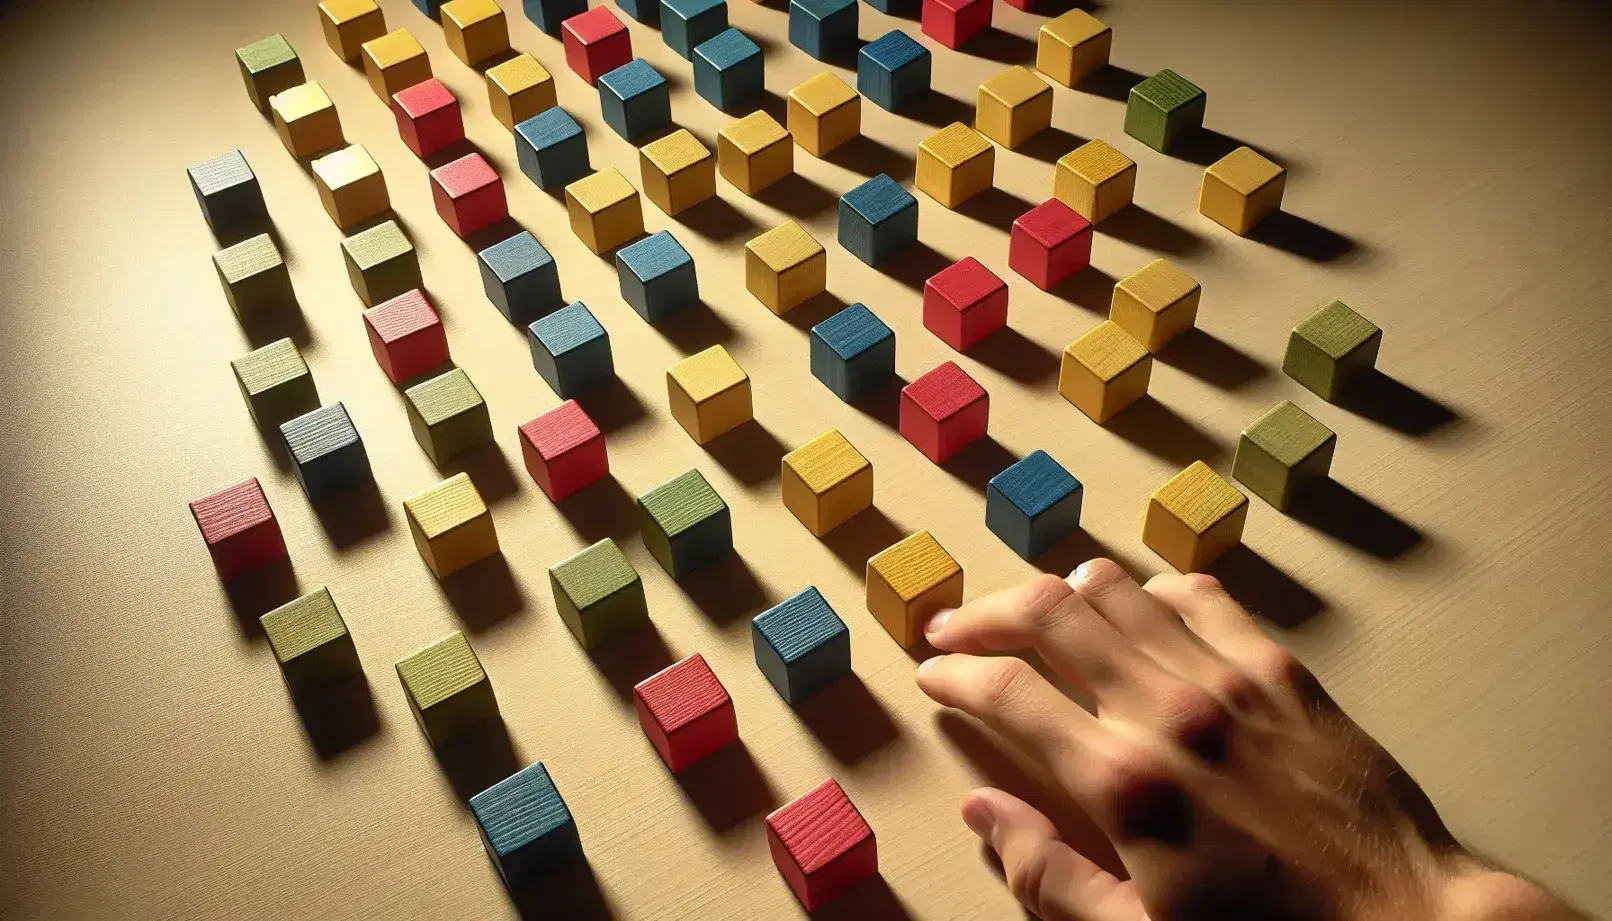 Bloques de madera de colores rojo, azul, verde y amarillo dispuestos en una cuadrícula sin repetir colores en filas o columnas, con una mano humana ajustando un bloque.